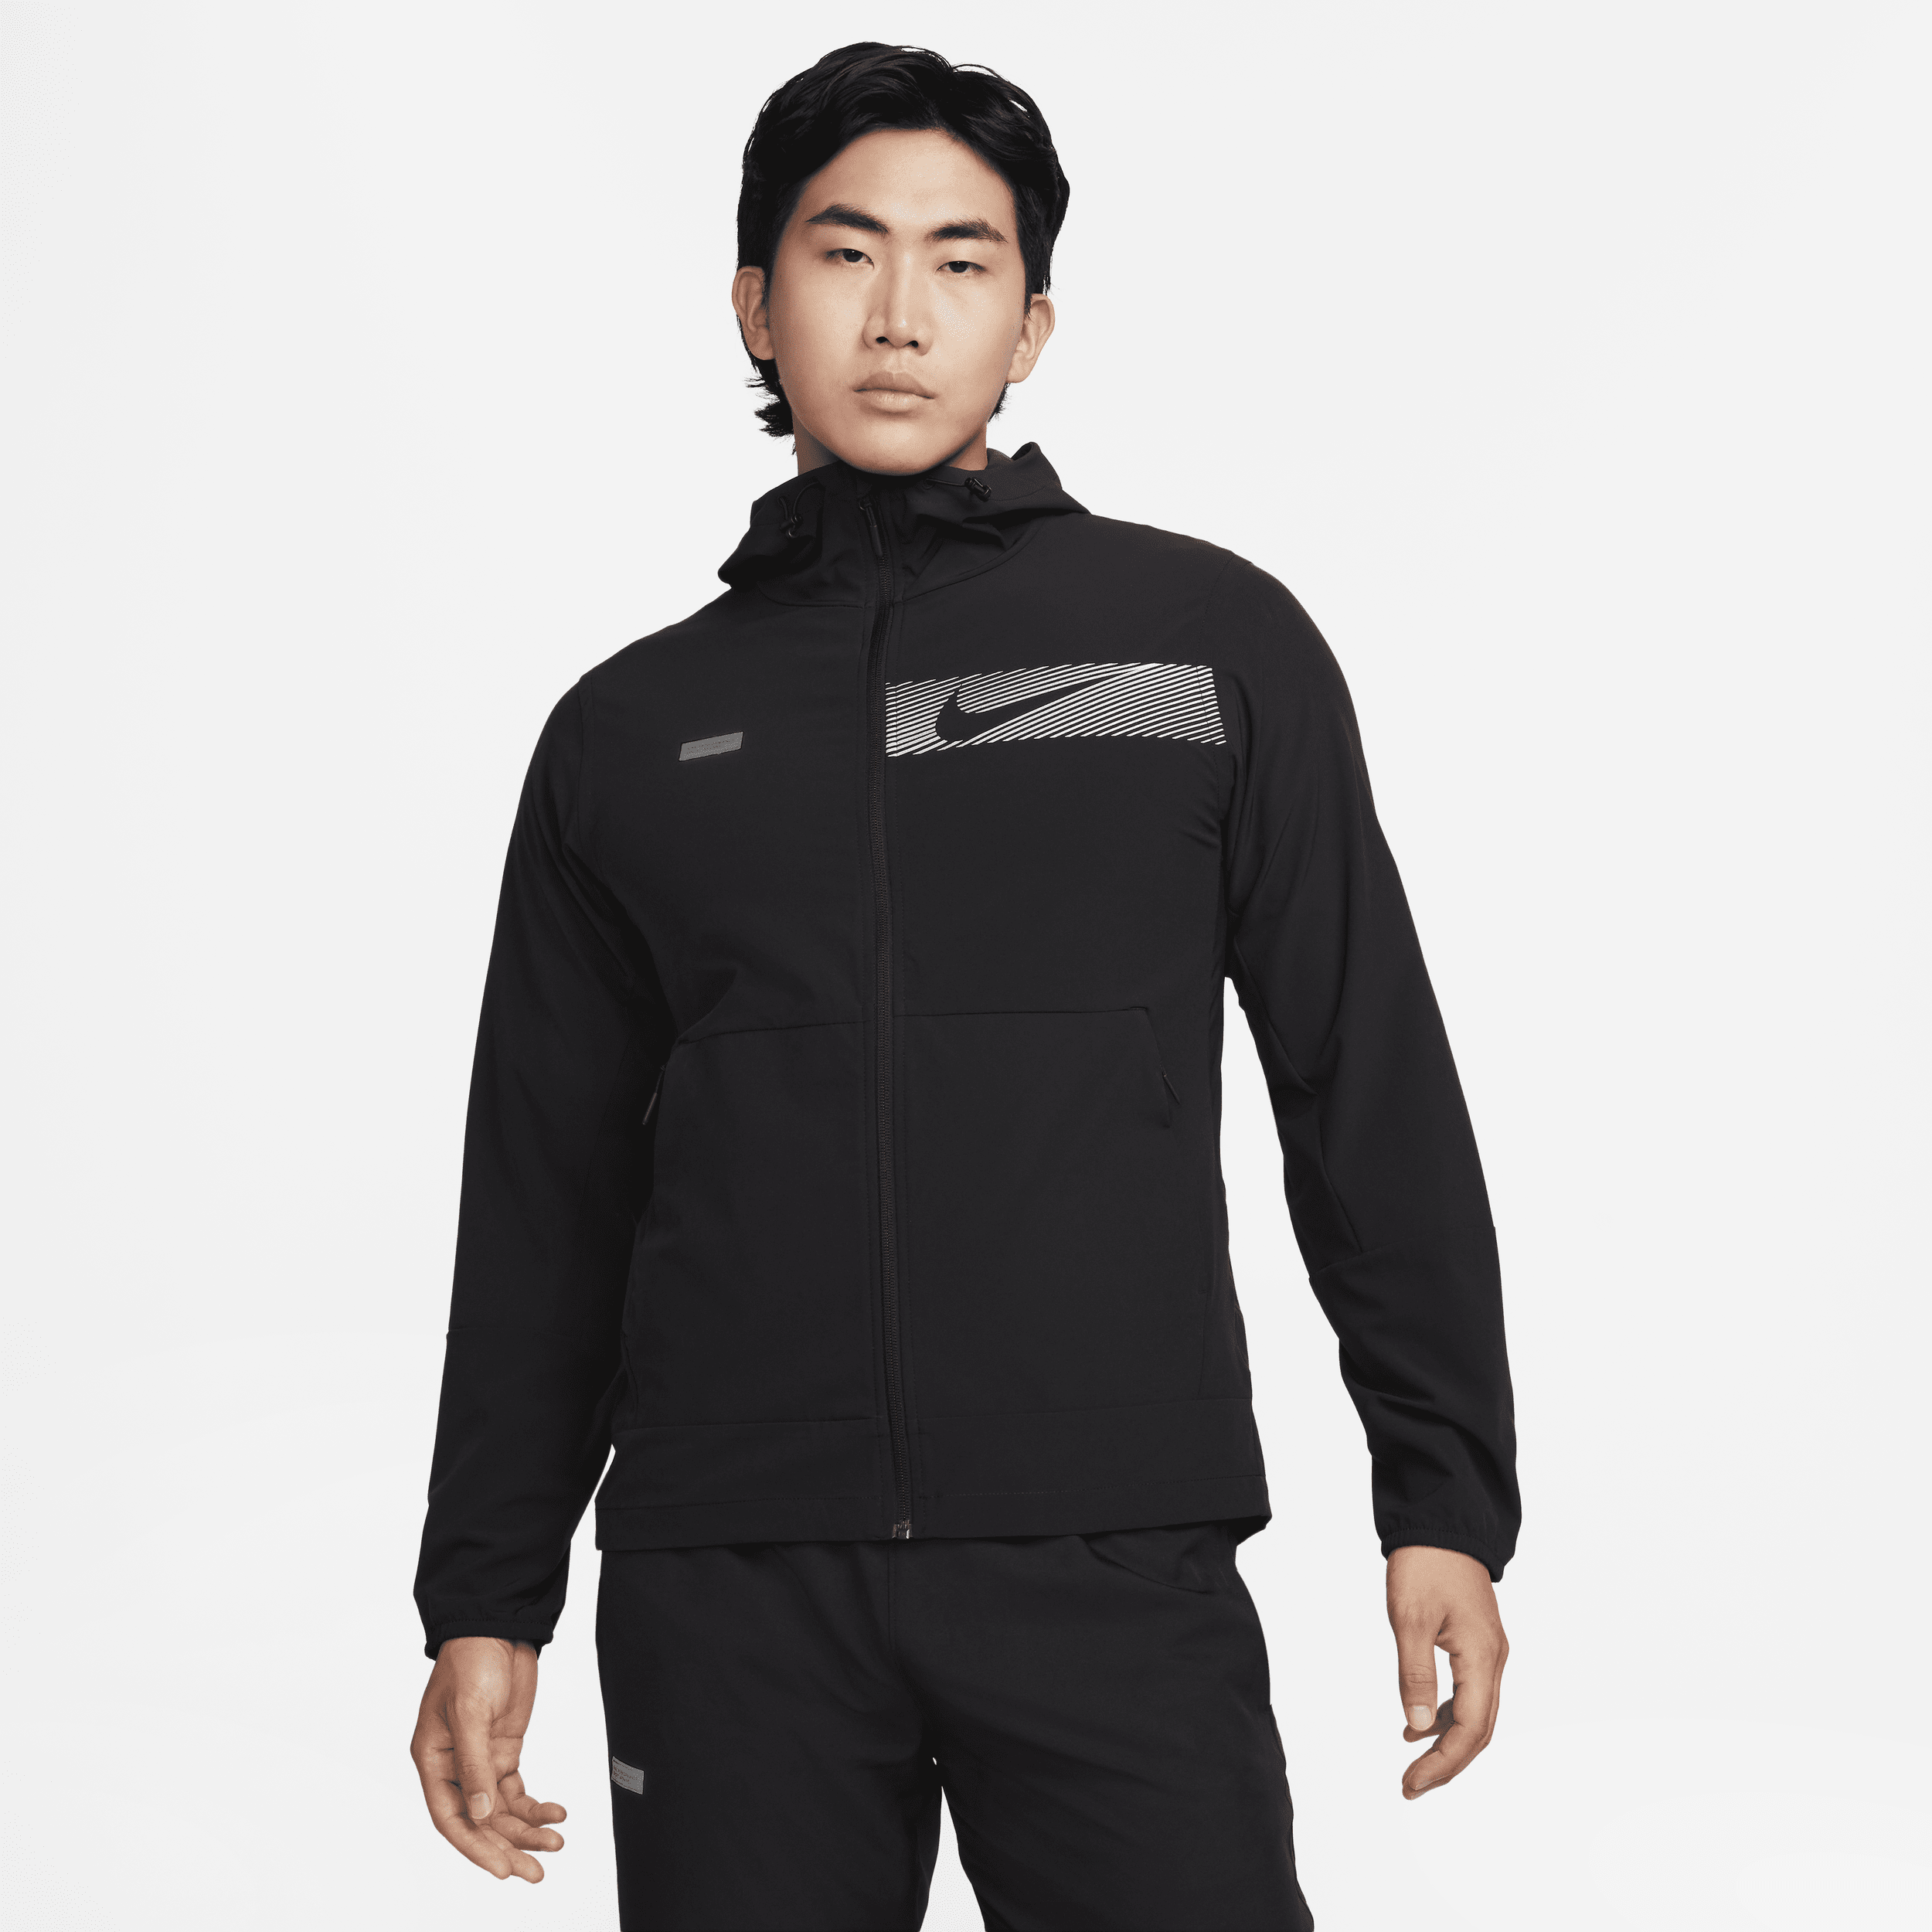 Nike Unlimited Chaqueta con capucha versátil y repelente al agua - Hombre - Negro